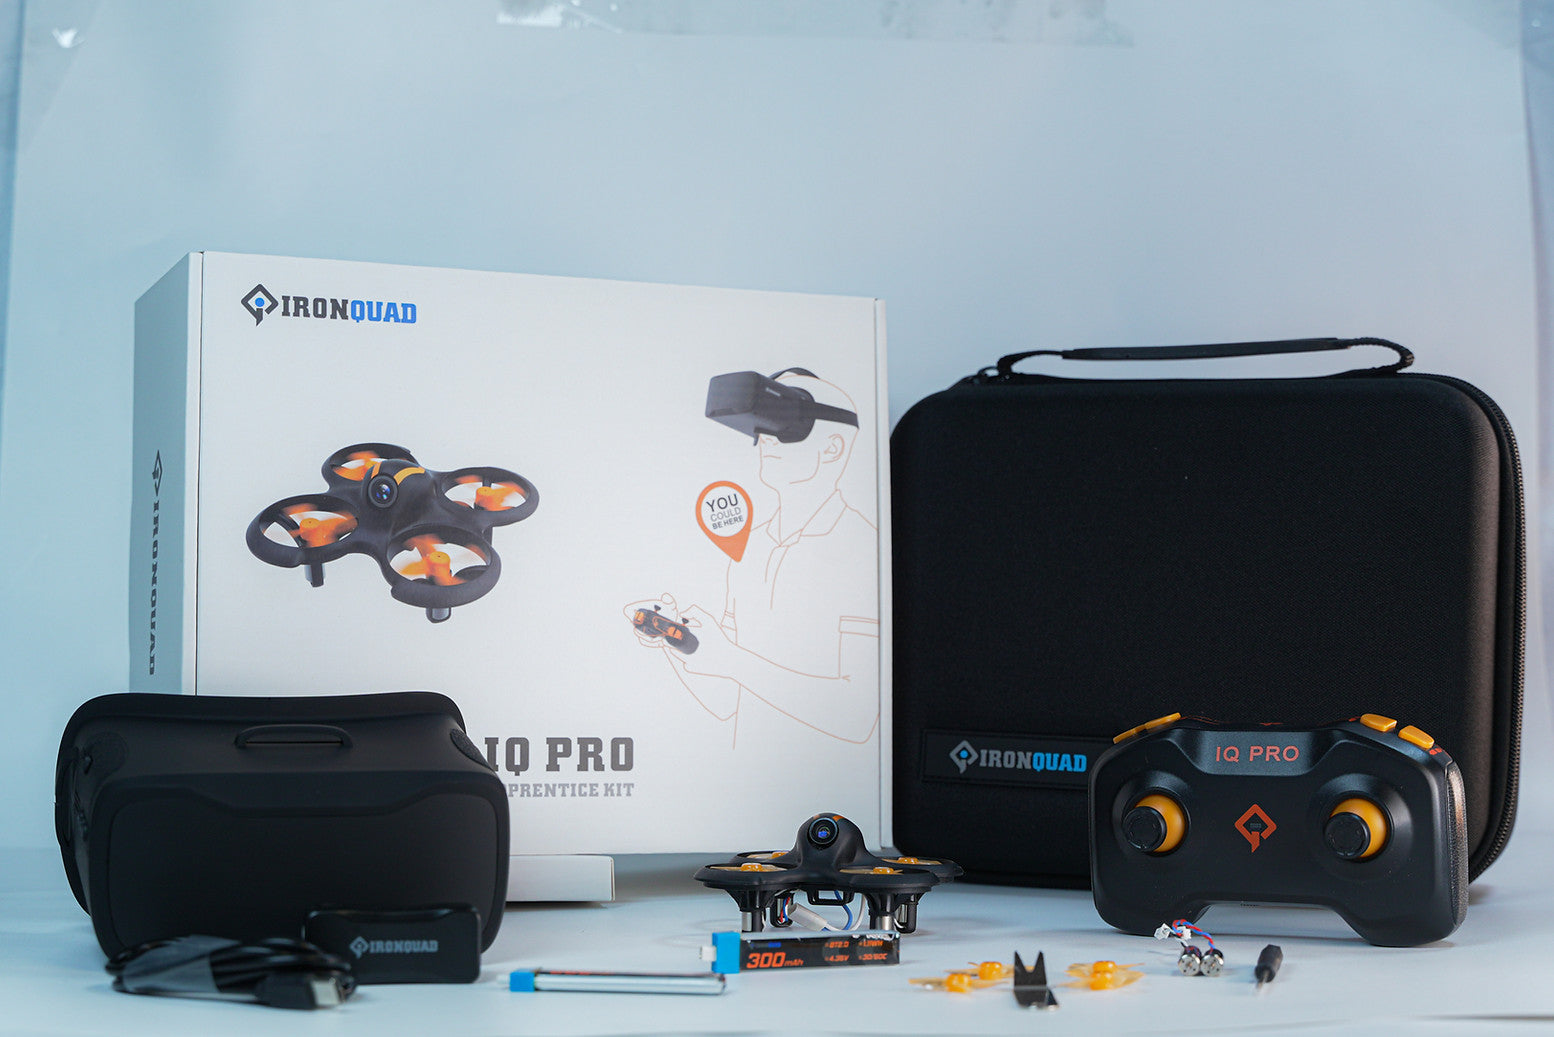 IQPR00  IQ Pro FPV Apprentice Kit Drone